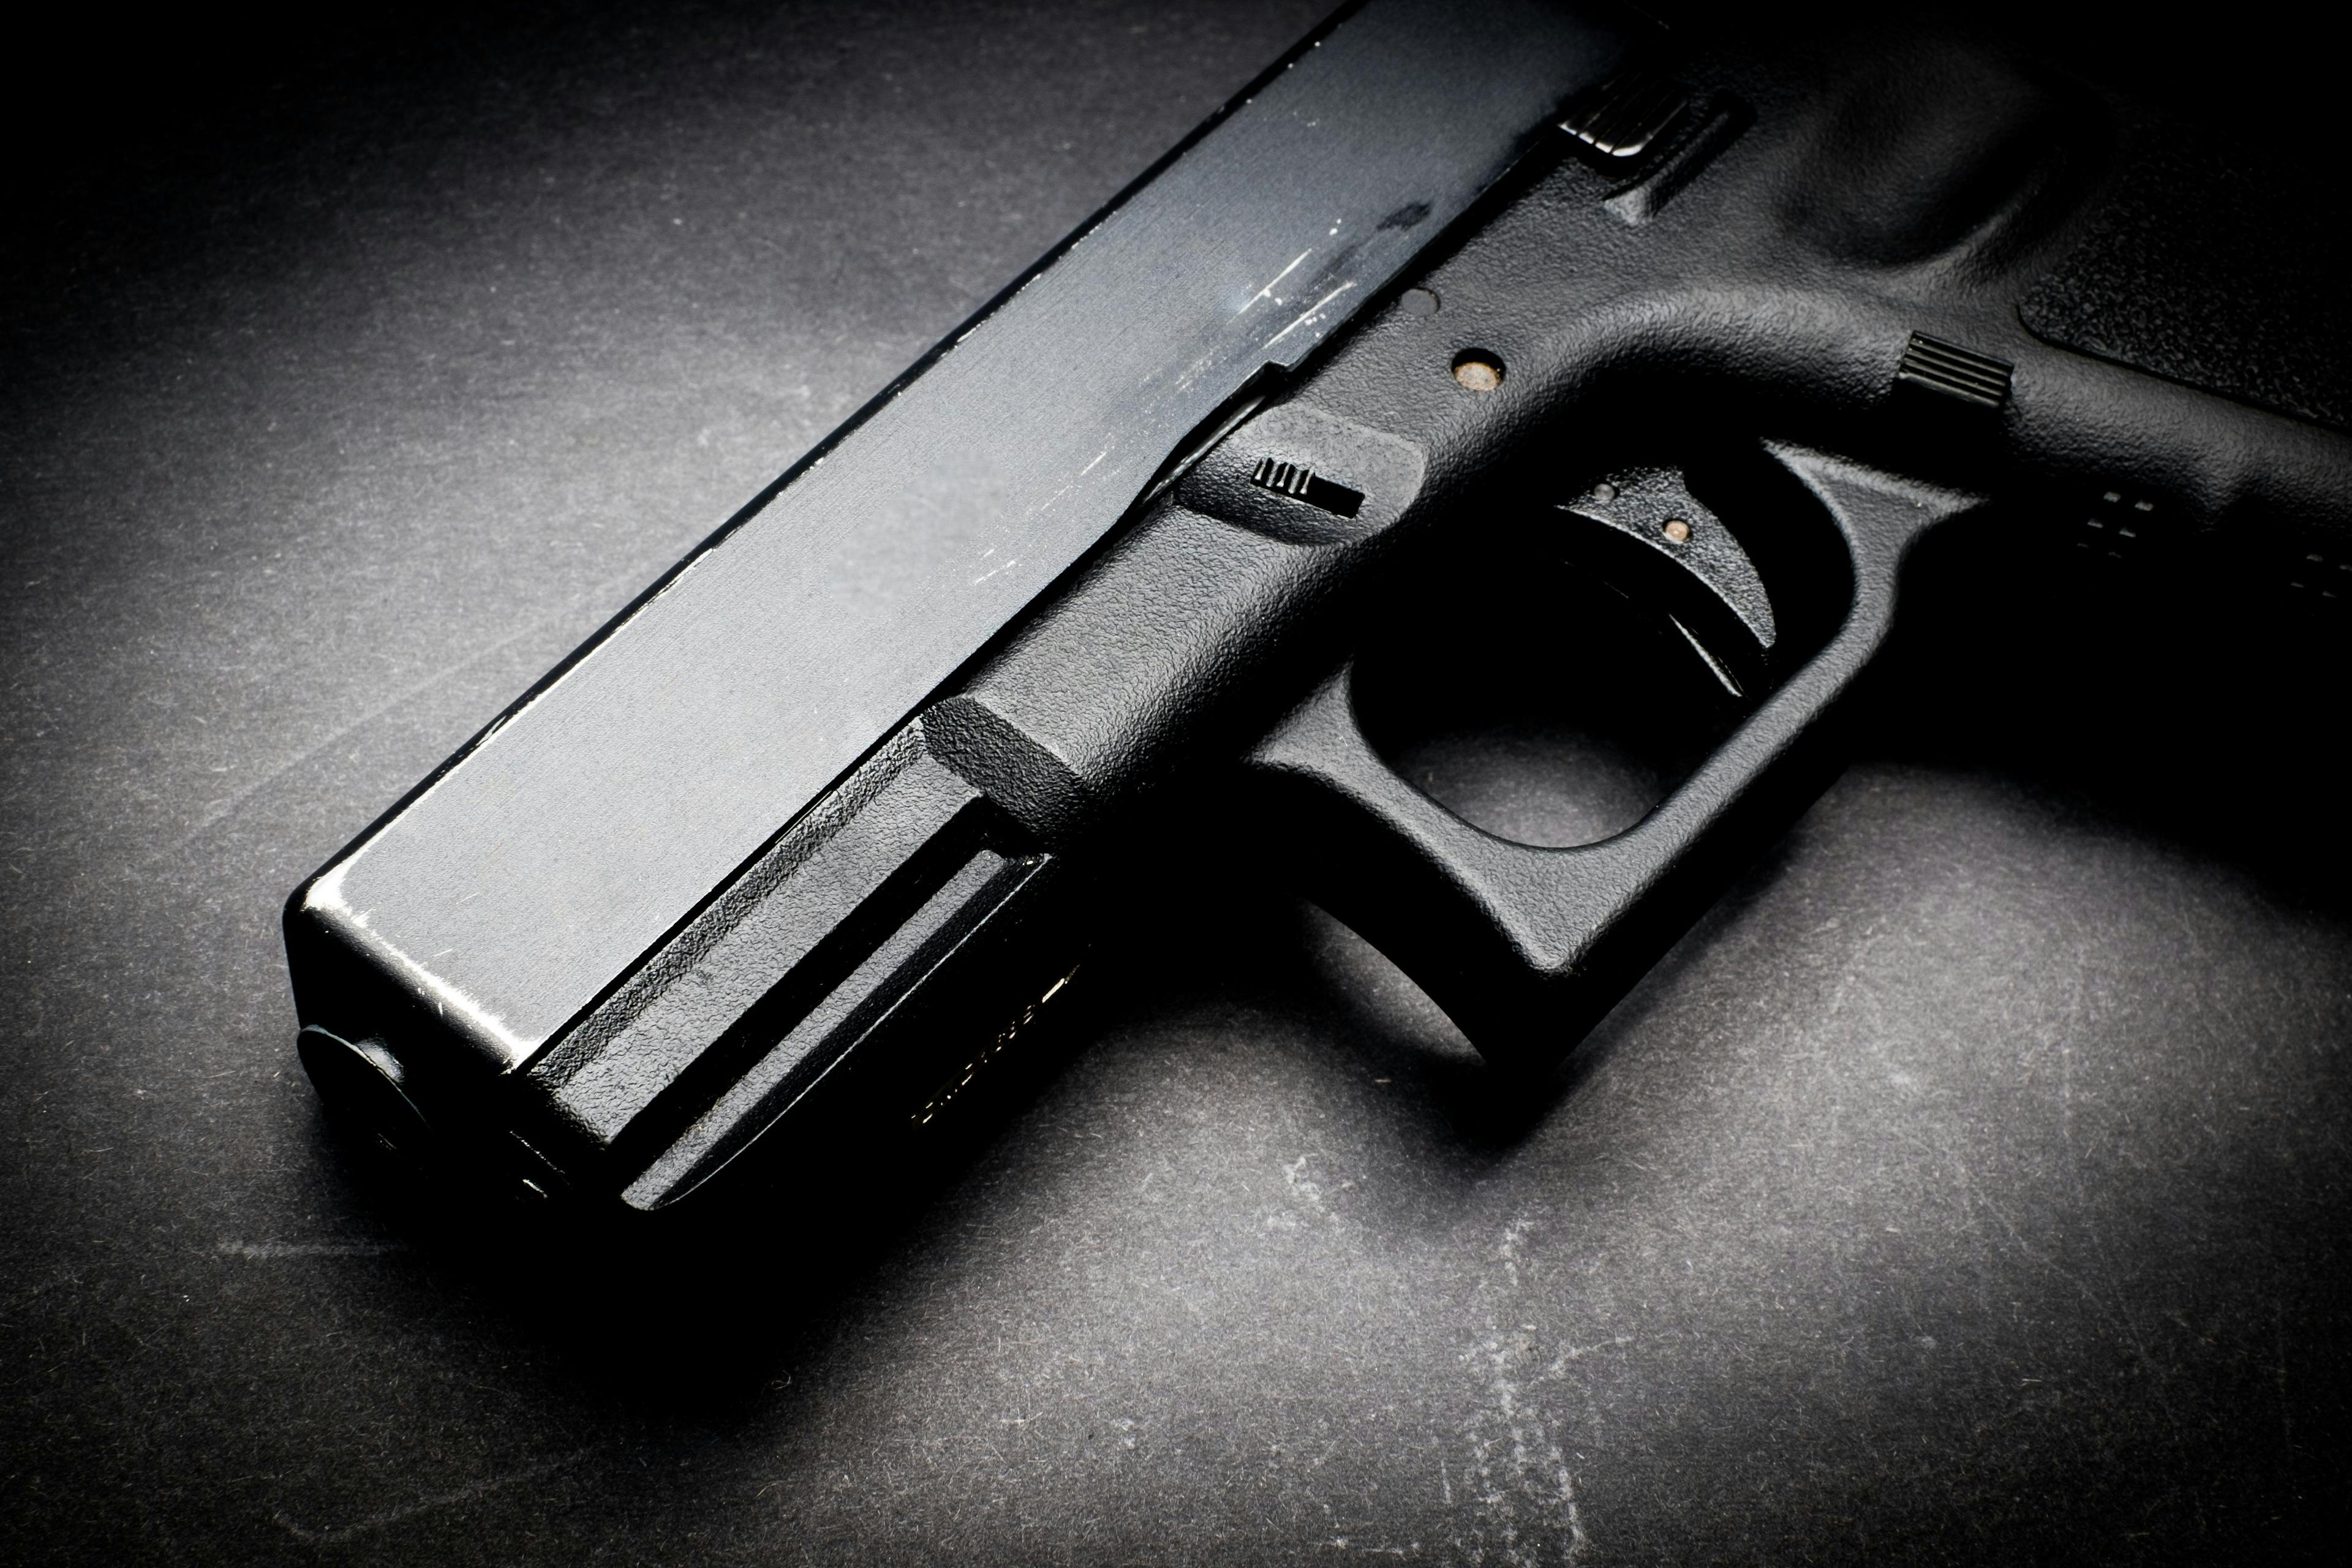 AMA weighs in on court case against Armlist online gun market